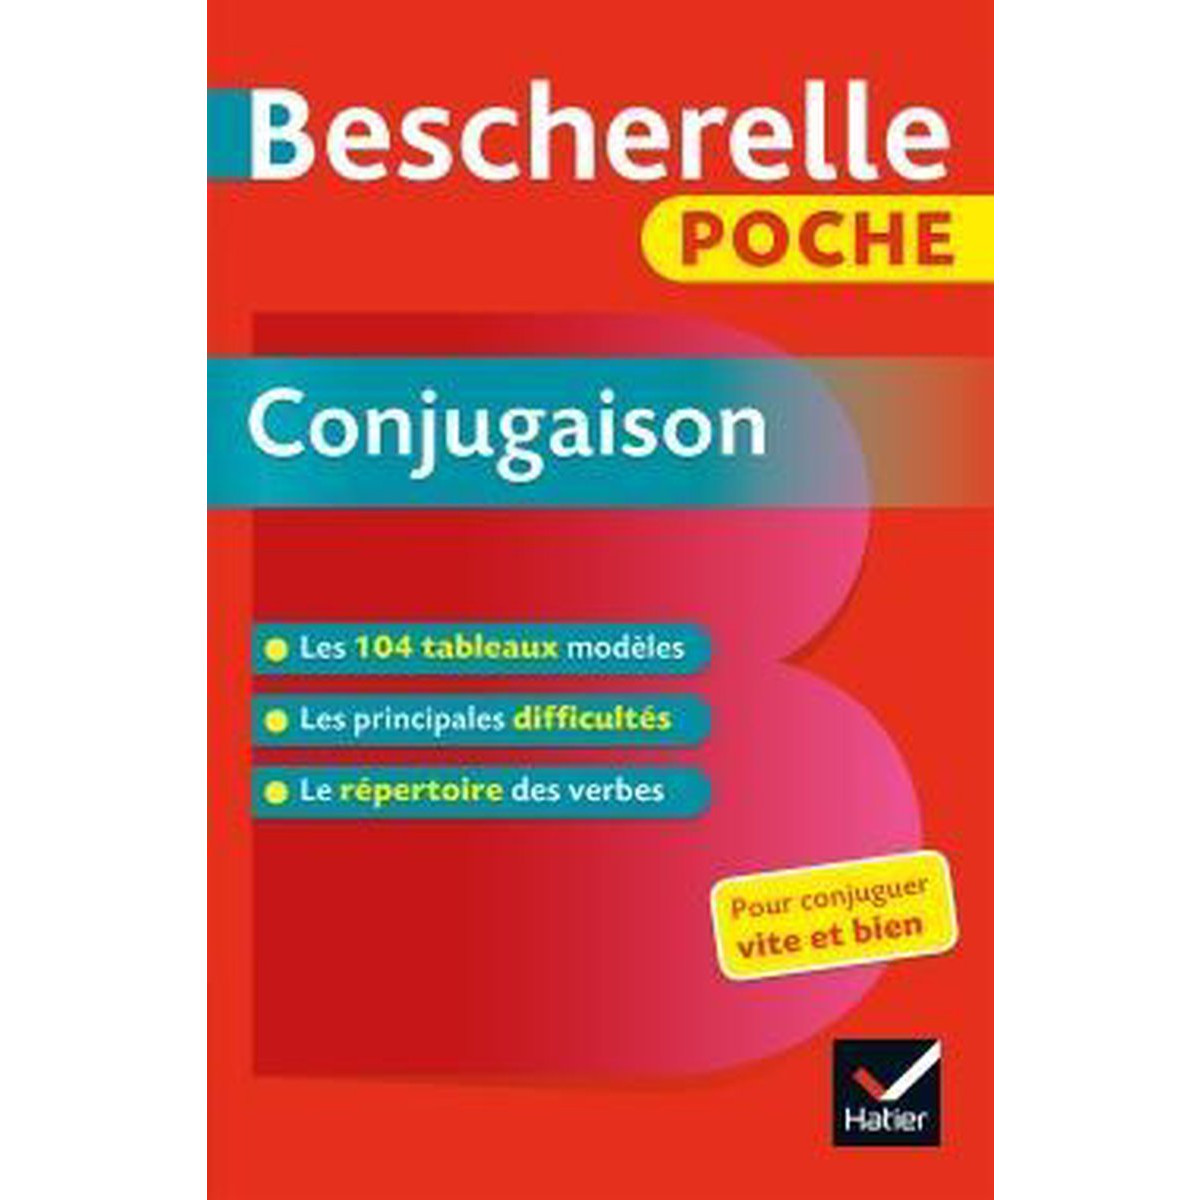 Hình ảnh Sách tham khảo tiếng Pháp: Bescherelle Poche Conjugaison - L'Essentiel De La Conjugaison Francaise